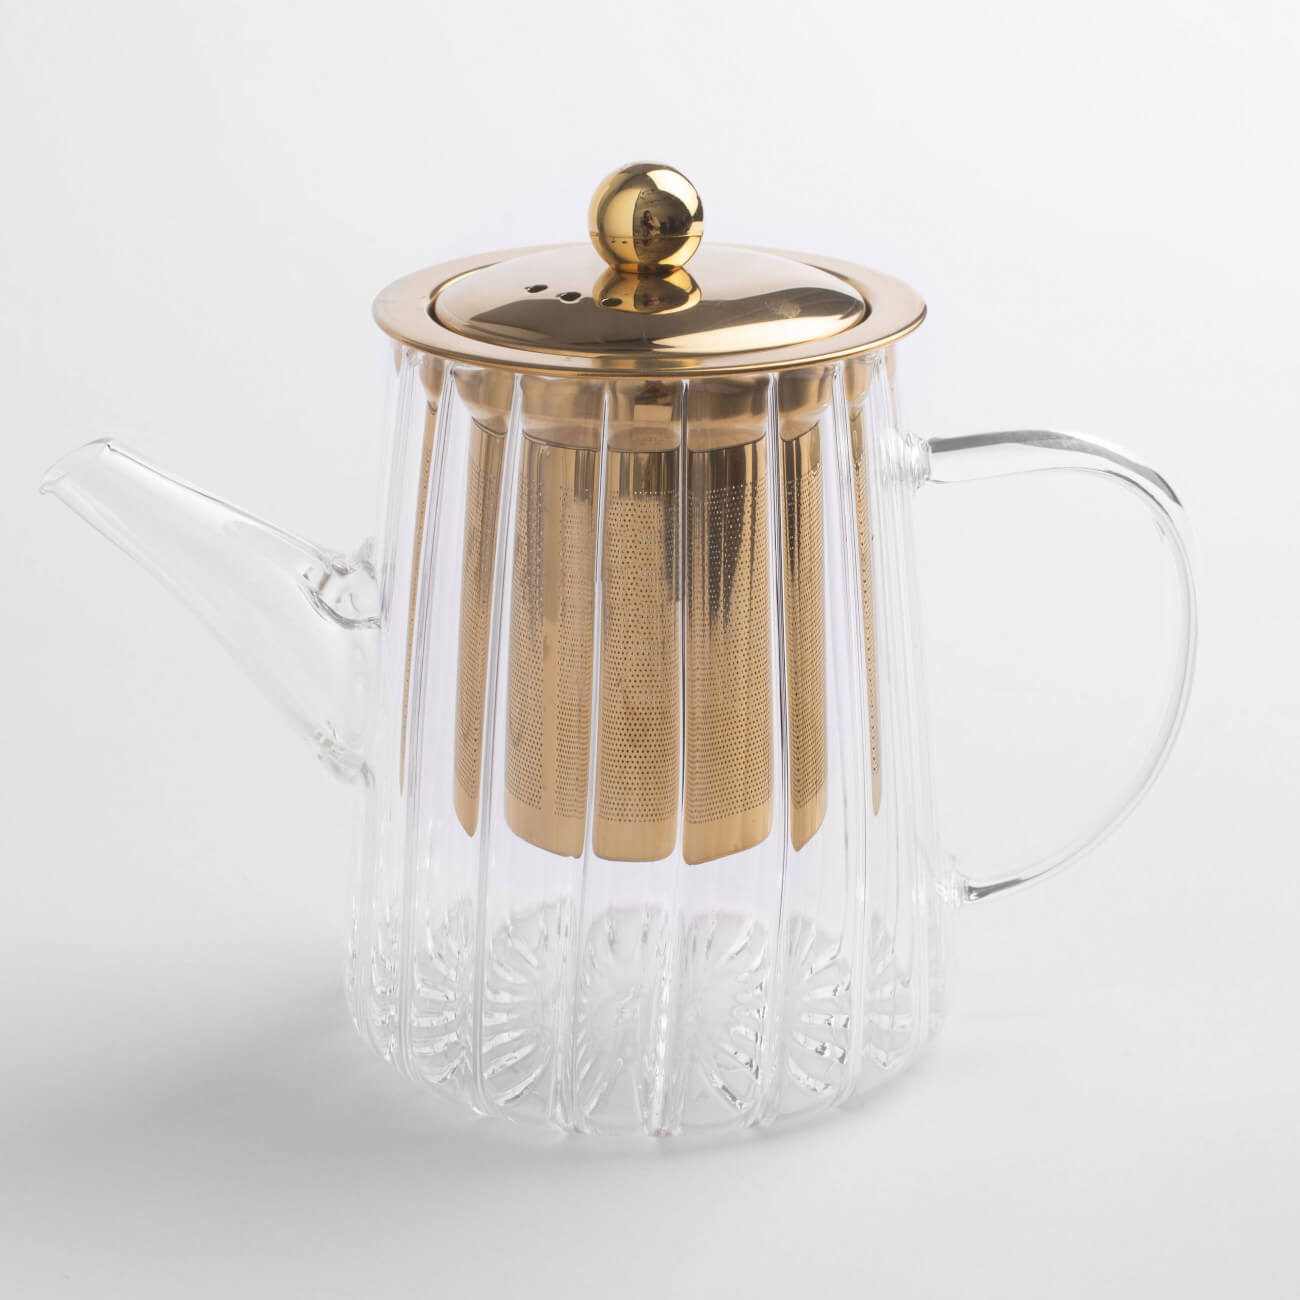 Чайник заварочный, 600 мл, стекло Б/сталь, золотистый, Camellia gold чайник заварочный 1200 мл